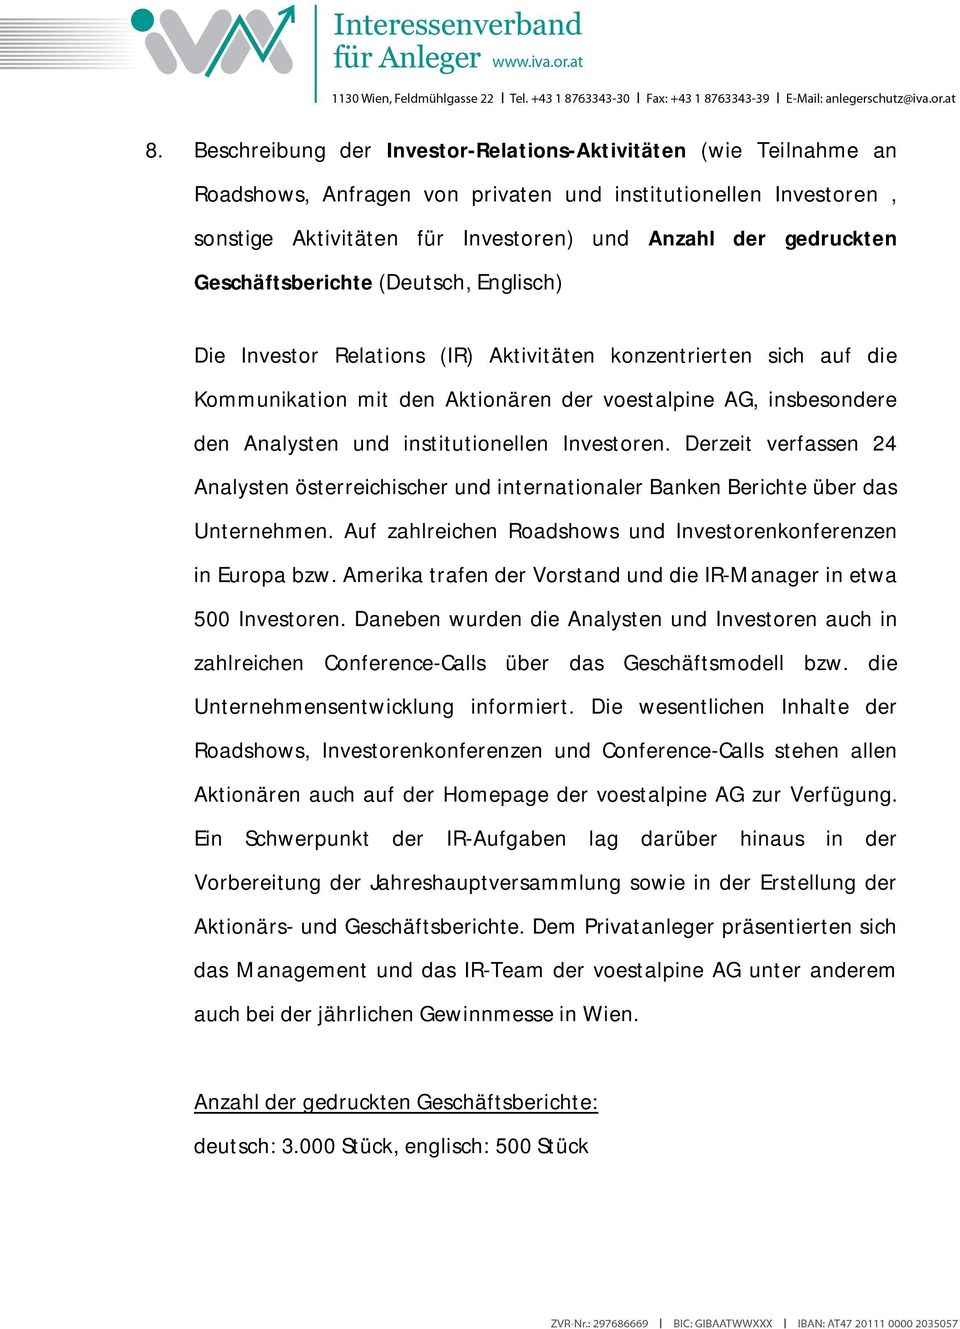 institutionellen Investoren. Derzeit verfassen 24 Analysten österreichischer und internationaler Banken Berichte über das Unternehmen.